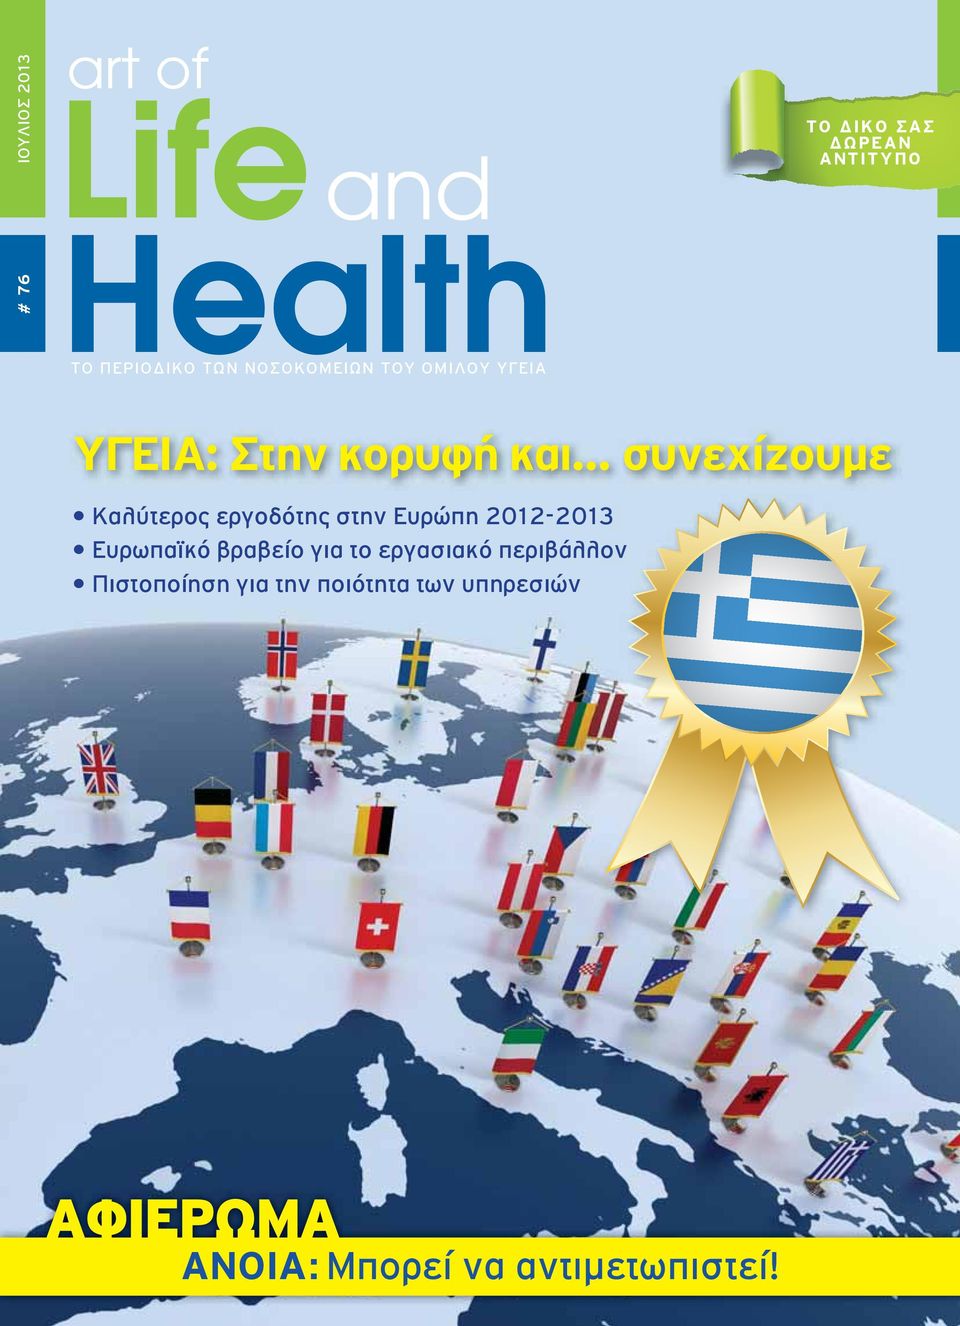 Καλύτερος εργοδότης στην Ευρώπη 2012-2013 Ευρωπαϊκό βραβείο για το